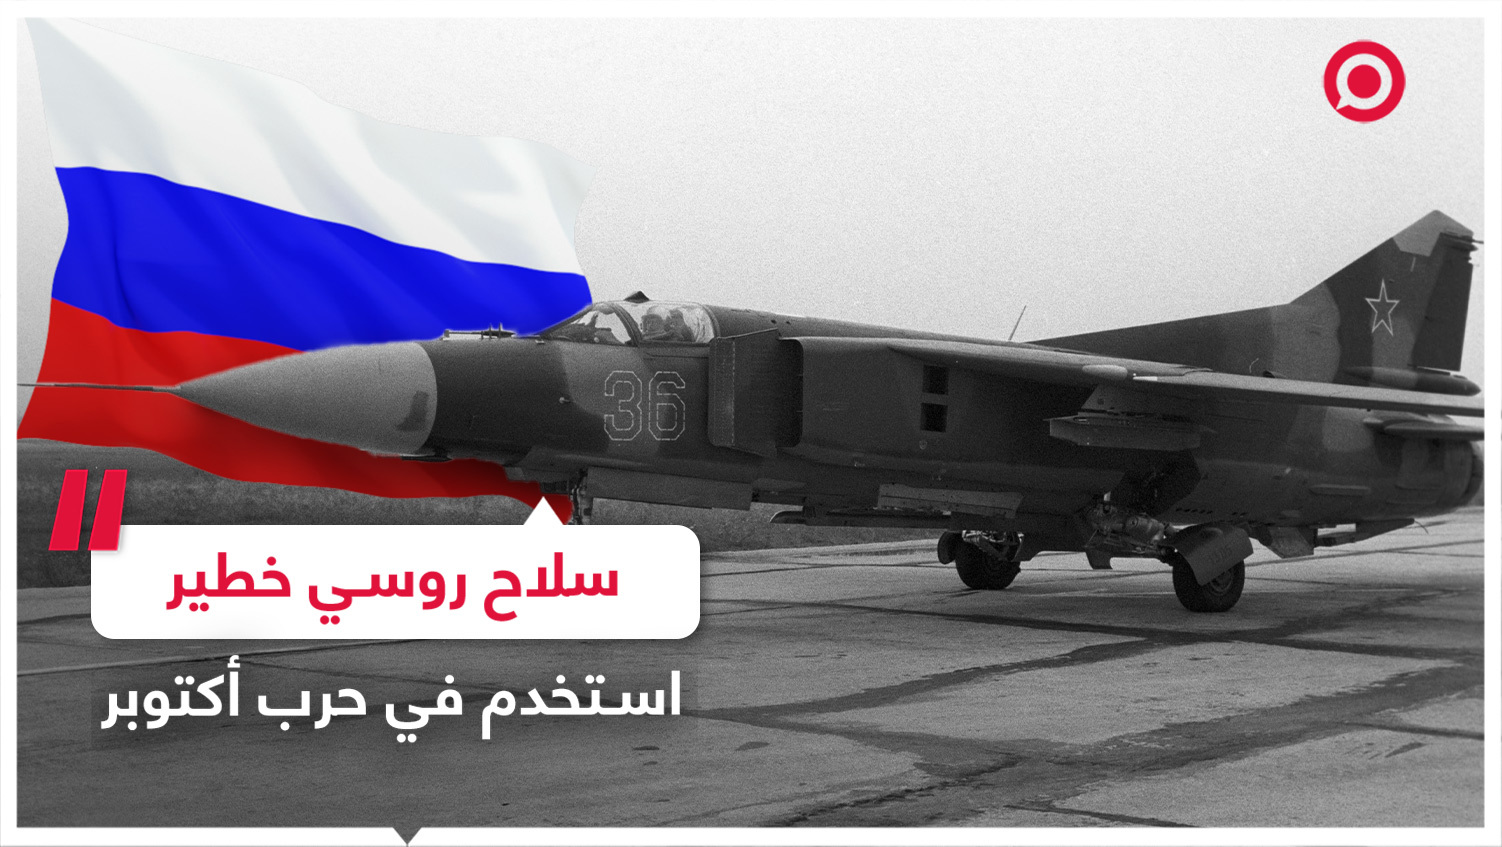 سلاح روسي خطير مكّن مصر من توجيه الضربة الجوية الأولى في حرب أكتوبر